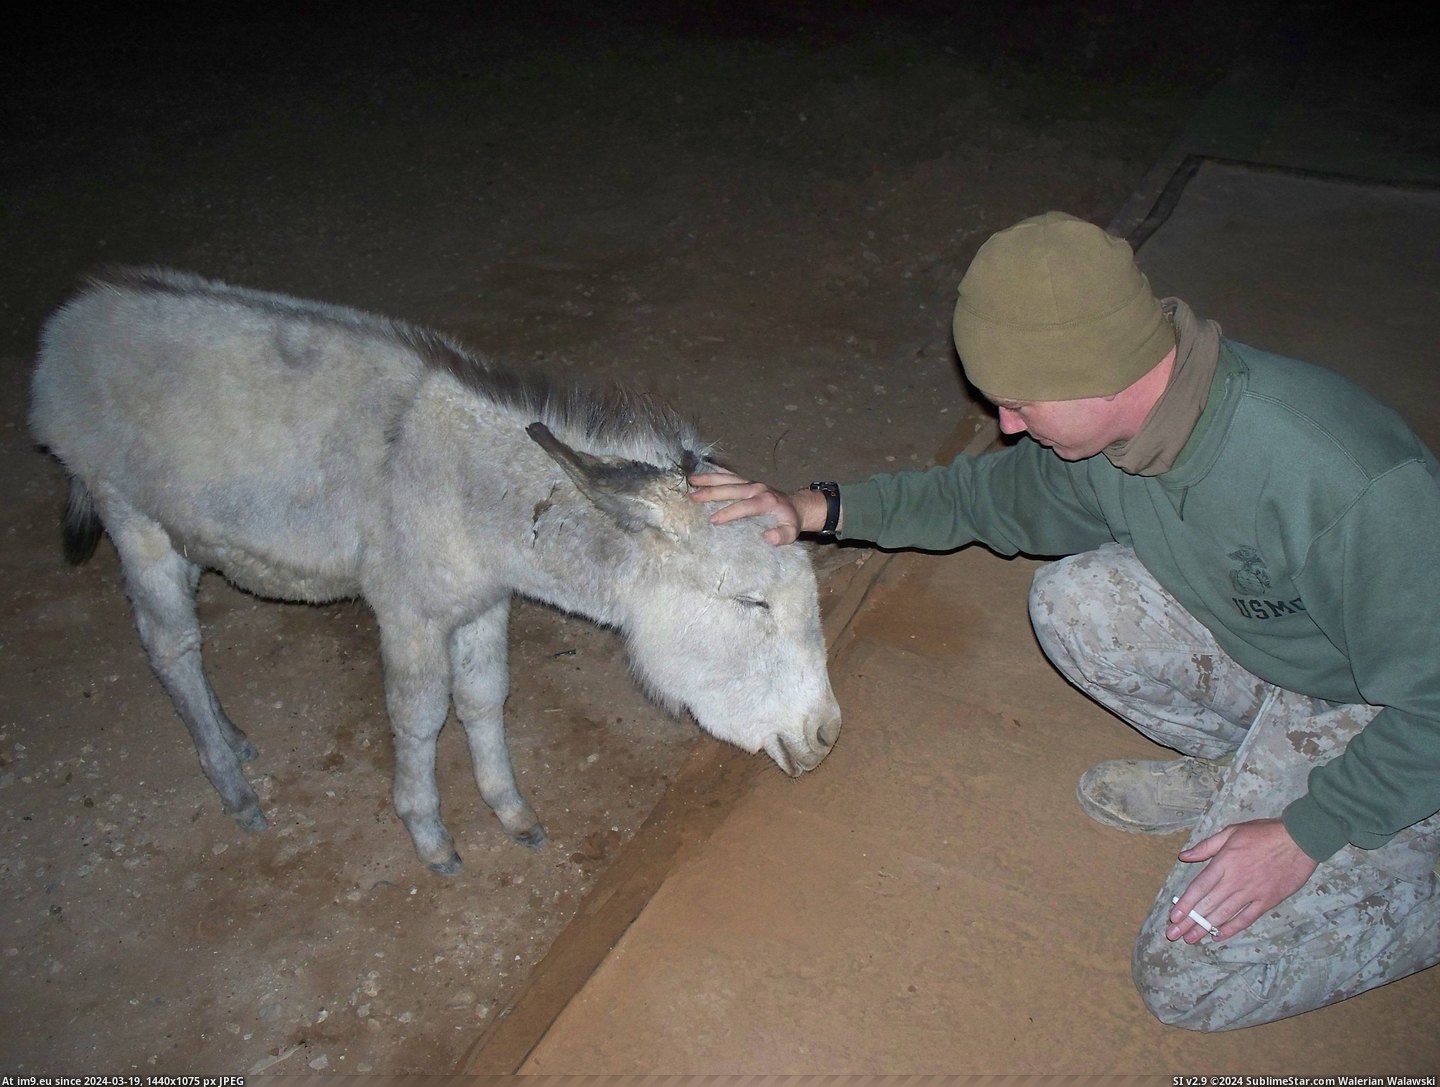 #Was #Had #Pet #Iraq #Donkey #Baby #Meet [Aww] When I was in Iraq, we had a pet donkey. Reddit, meet Baby! Pic. (Obraz z album My r/AWW favs))